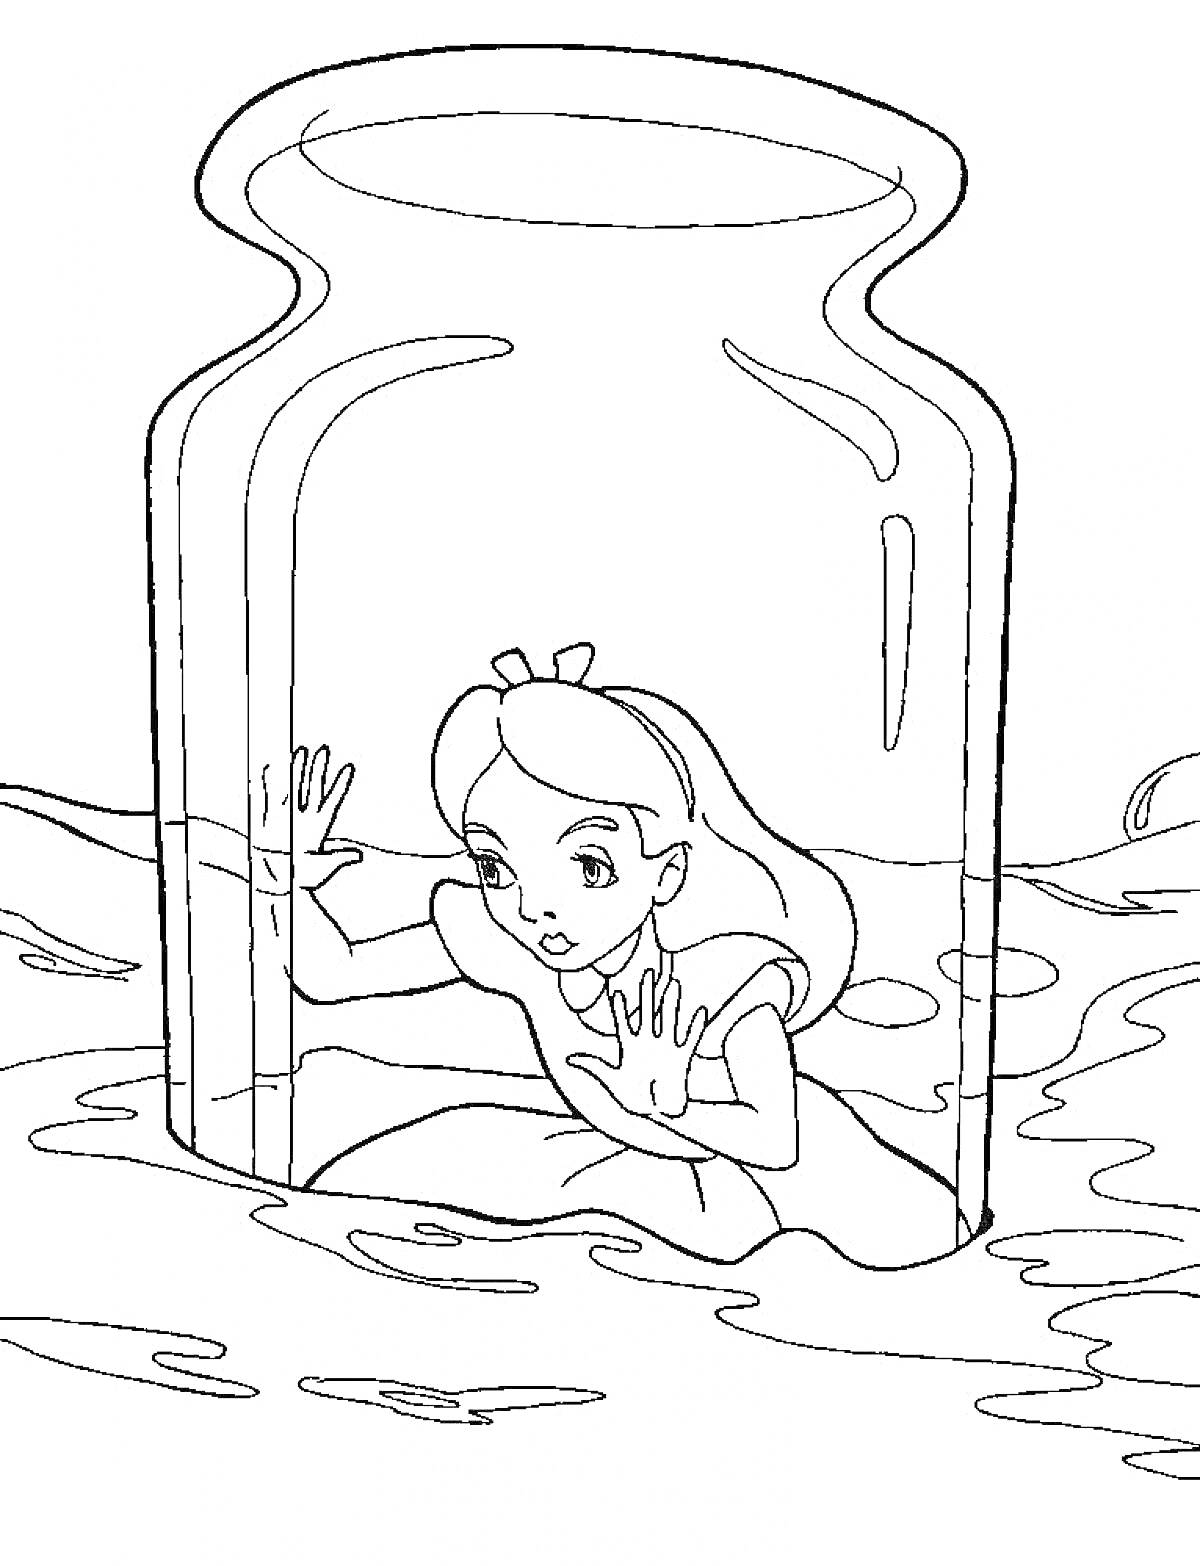 Алиса в банке, плавающей в жидкости